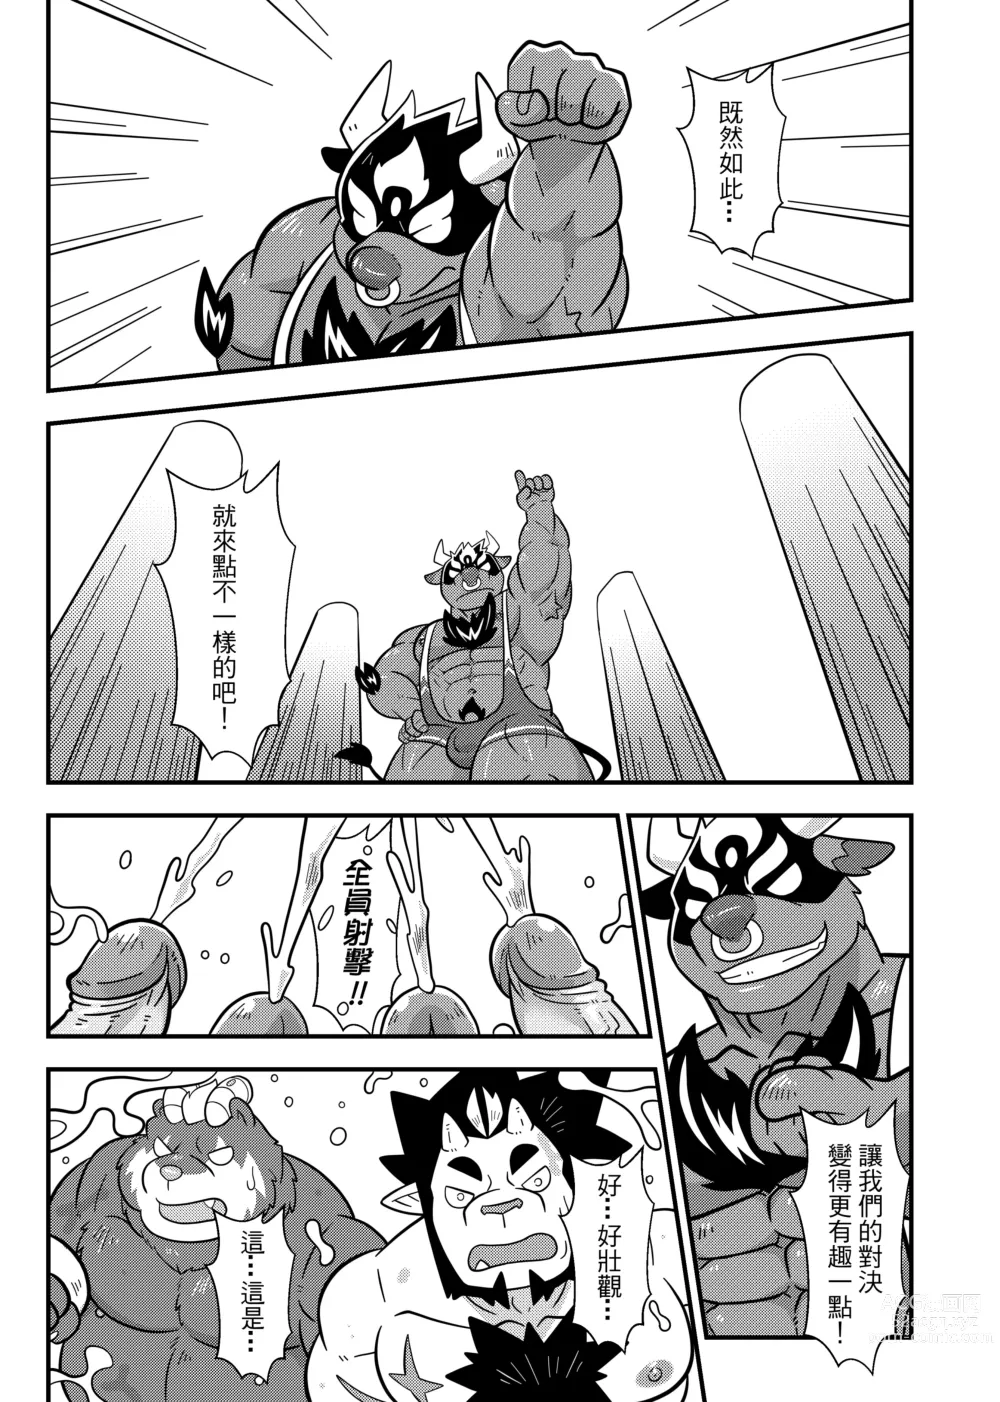 Page 36 of doujinshi 勇者的大小只有魔王塞得下4